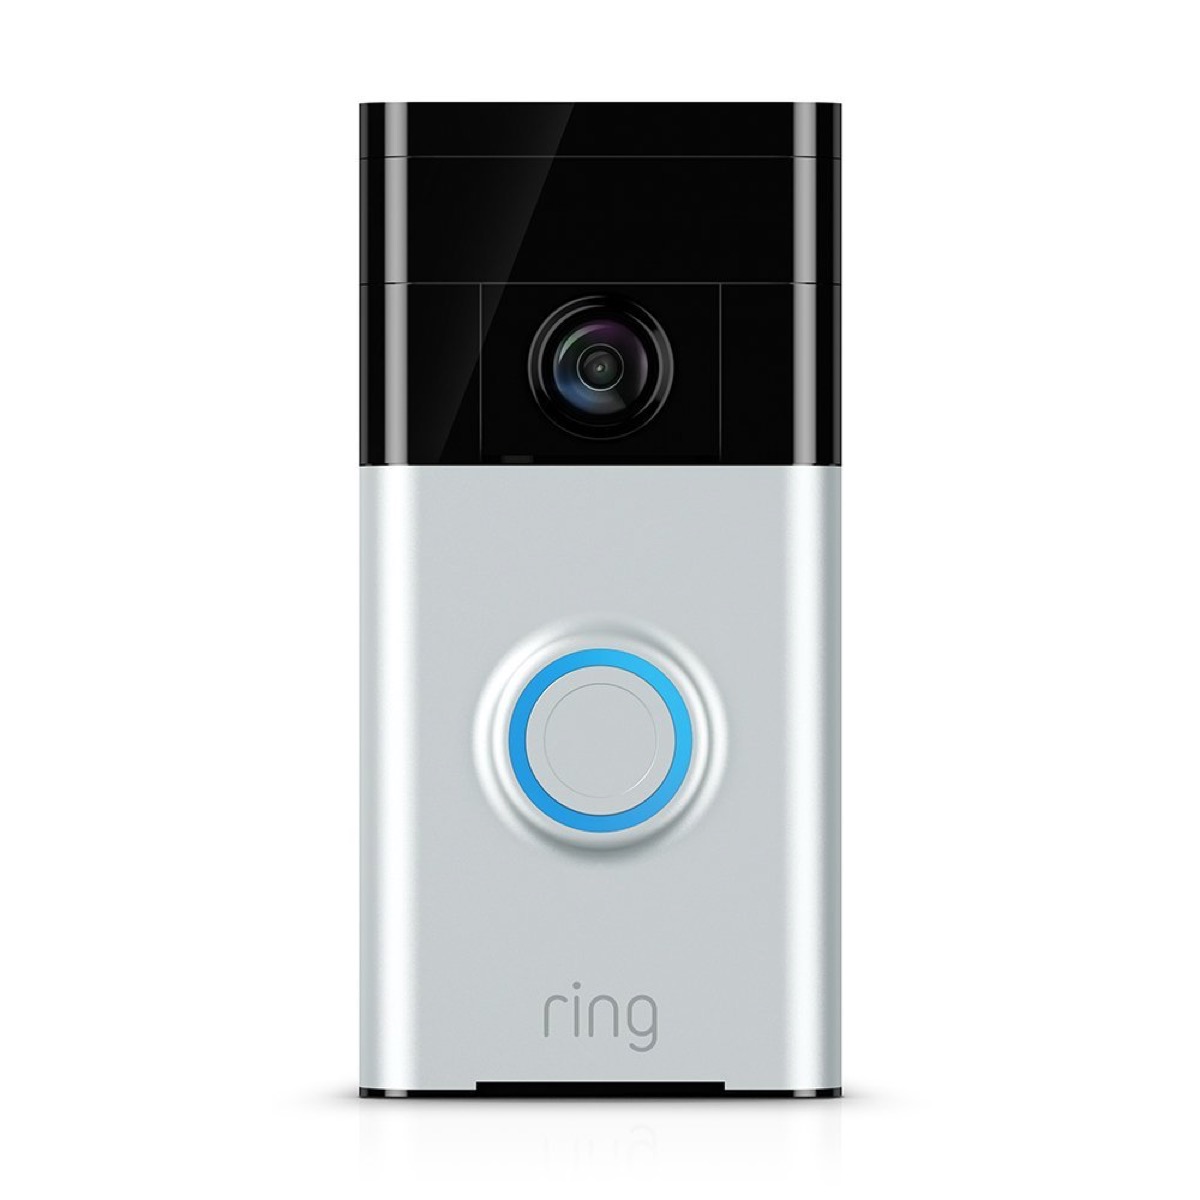 ring video doorbell, prime day deals